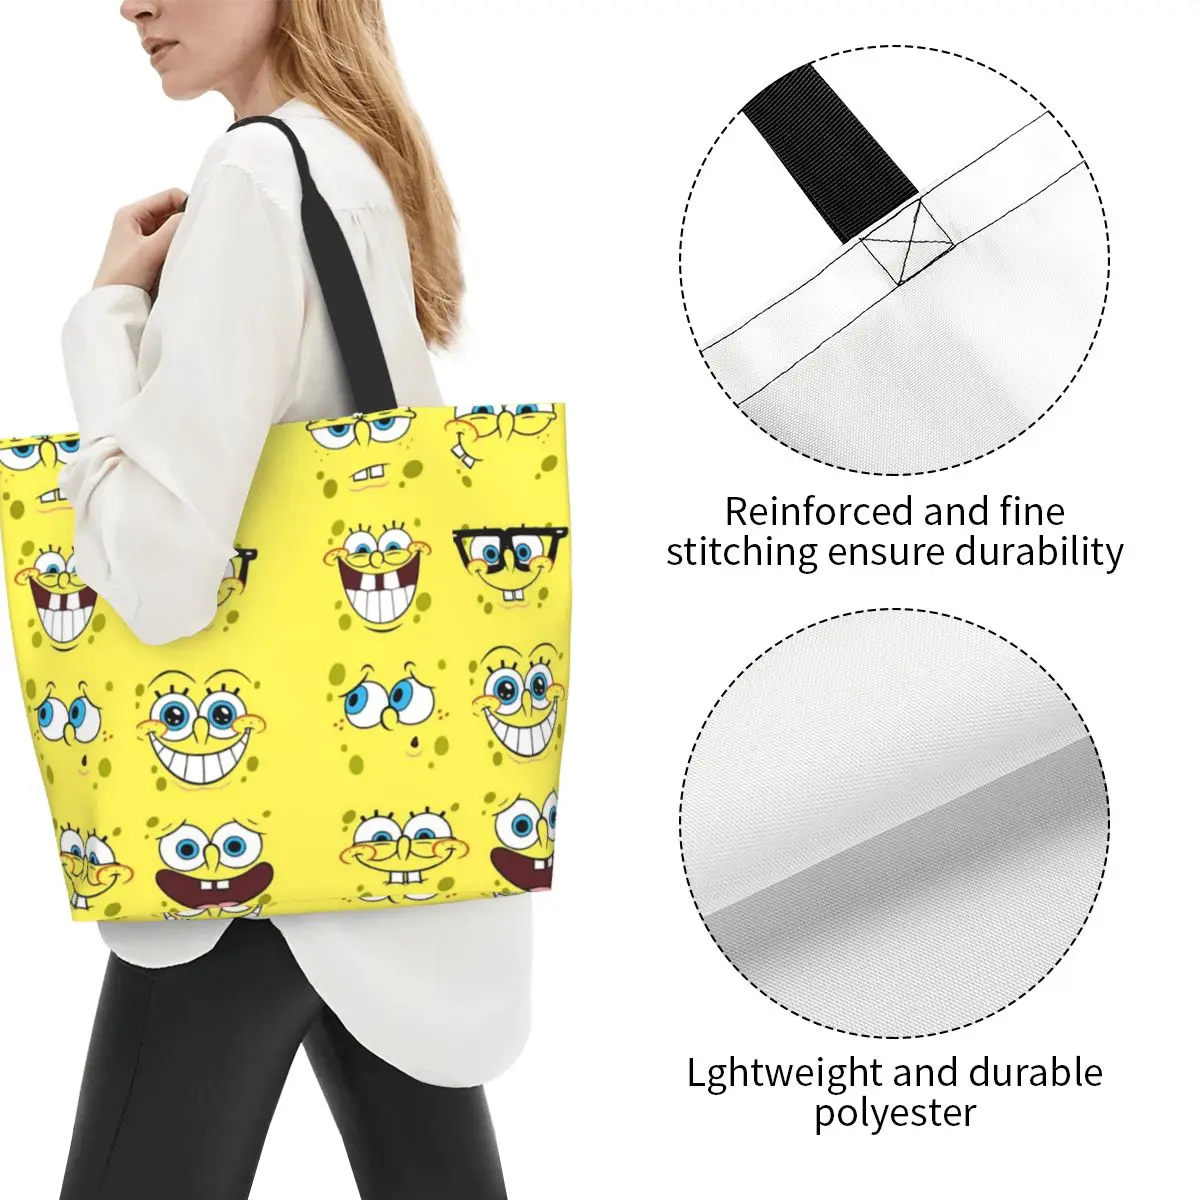 Холщовая Сумка Sponge5 Женская дешевая сумка милая аниме для покупок Ins - купить по